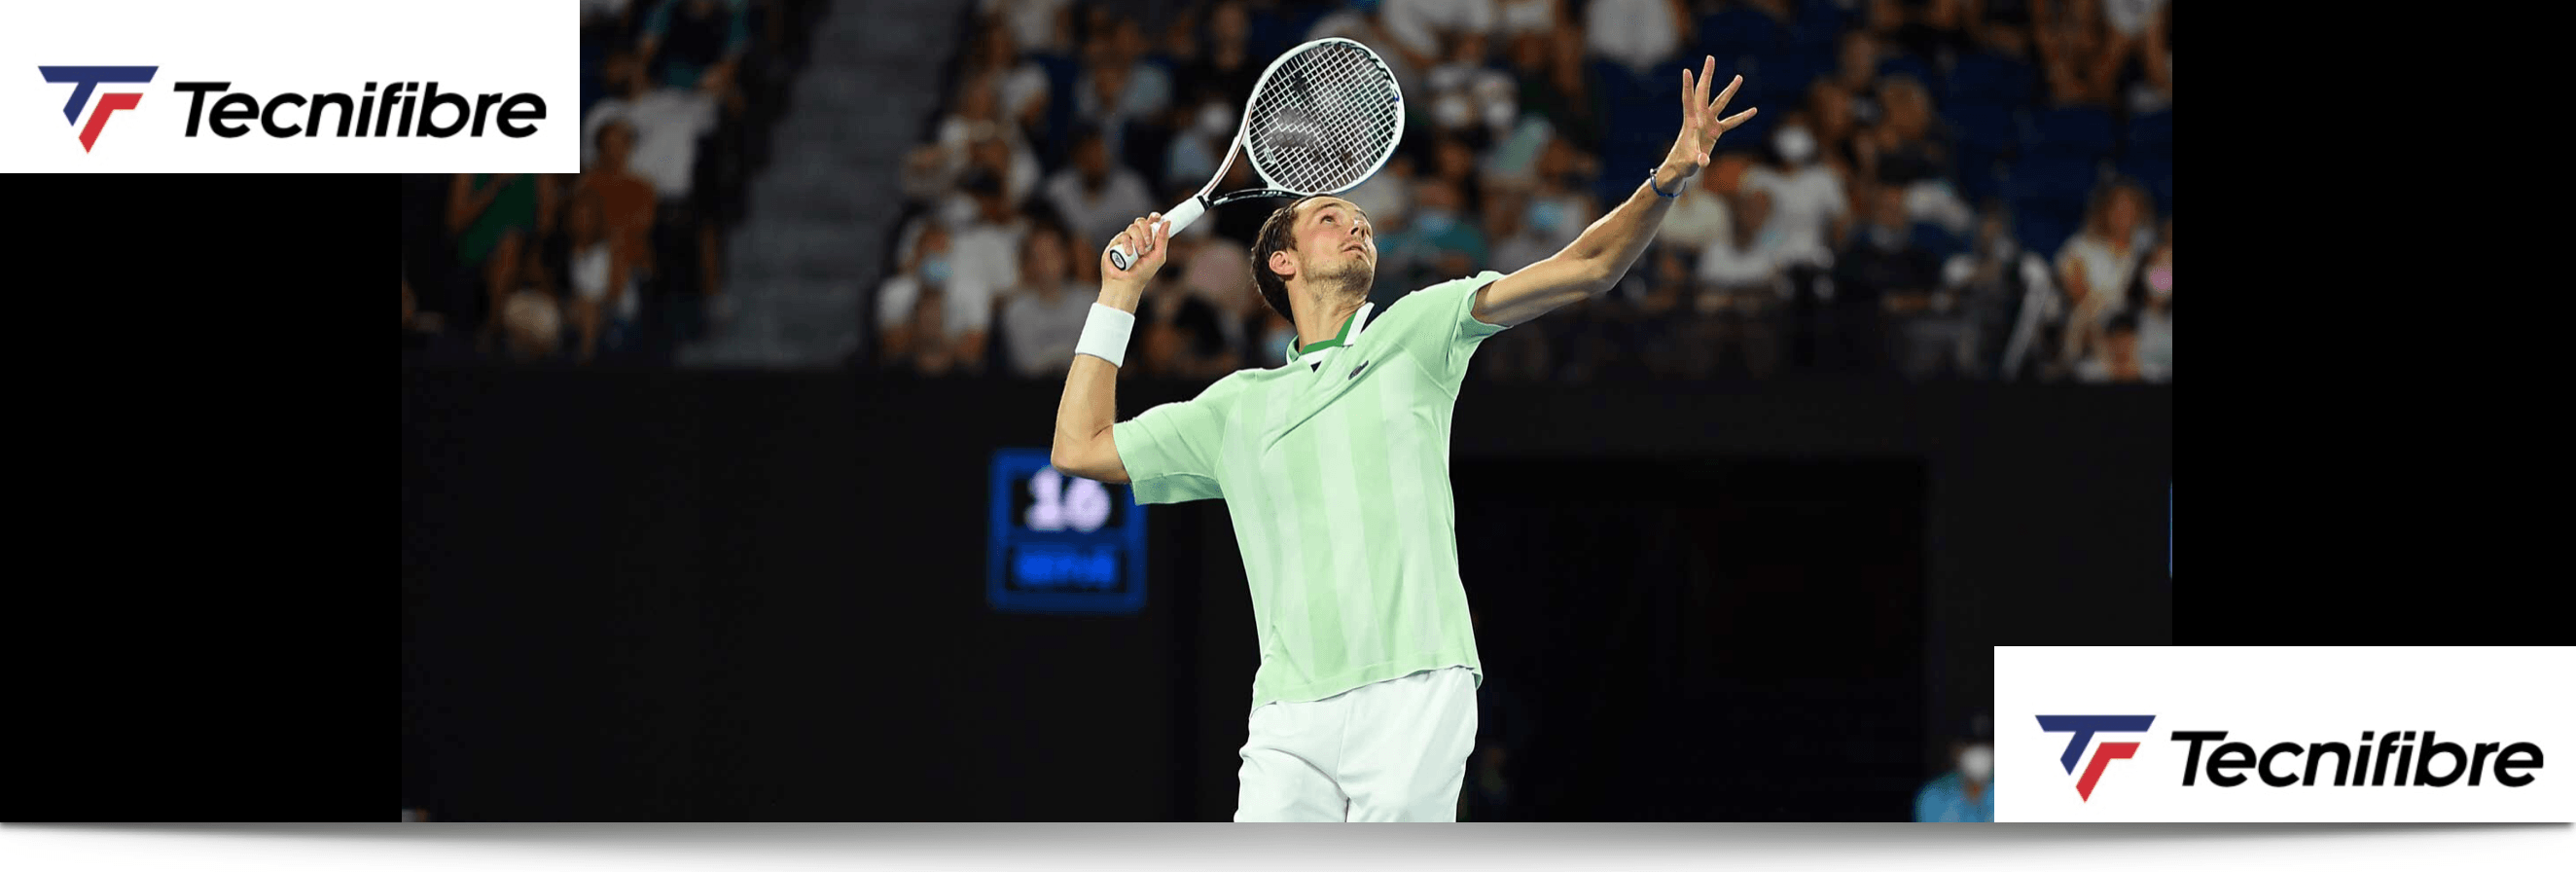 Daniil Medvedev Tennis Gear Racquet Point